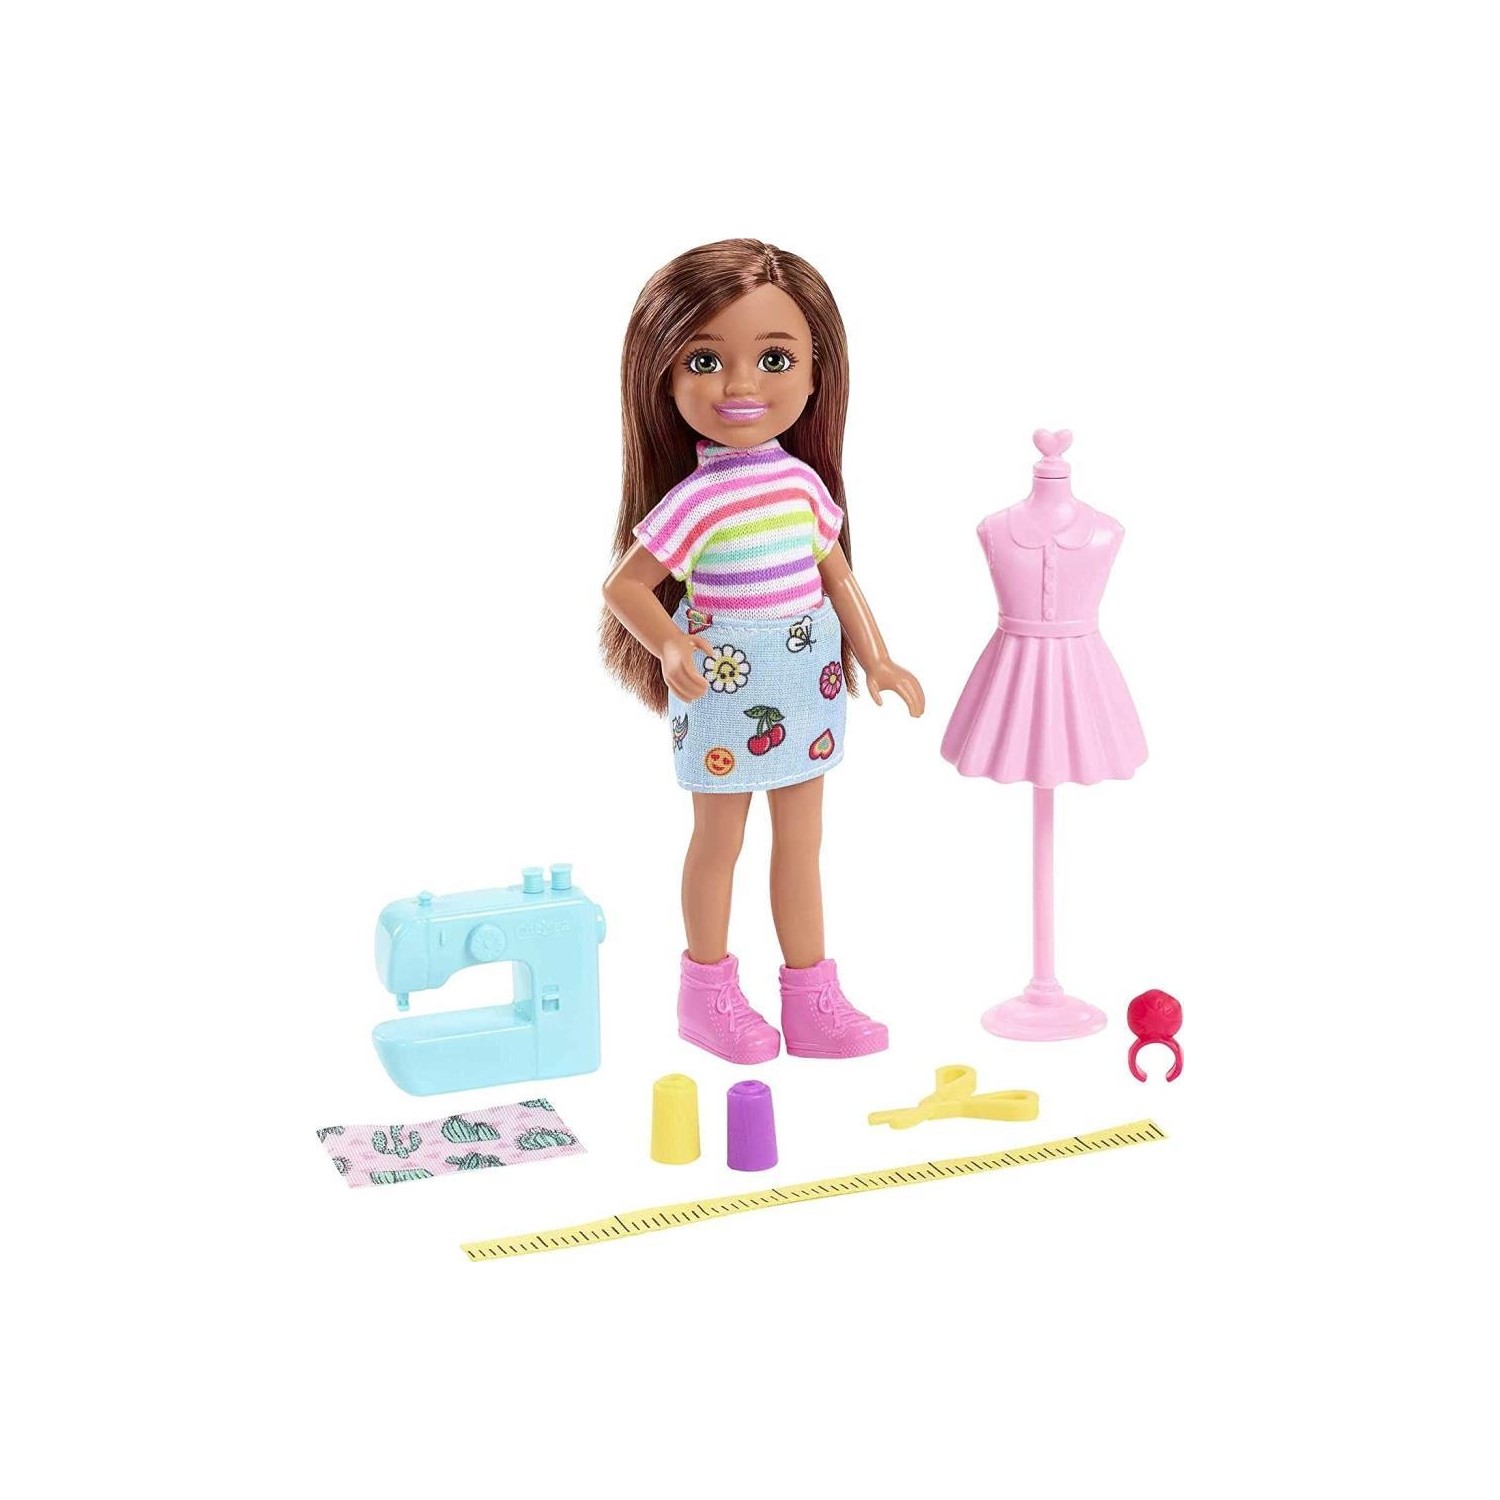 Кукла Barbie Челси GTN86 кастомизированный беспроводной геймпад dualshock 4 челси fc chelsea